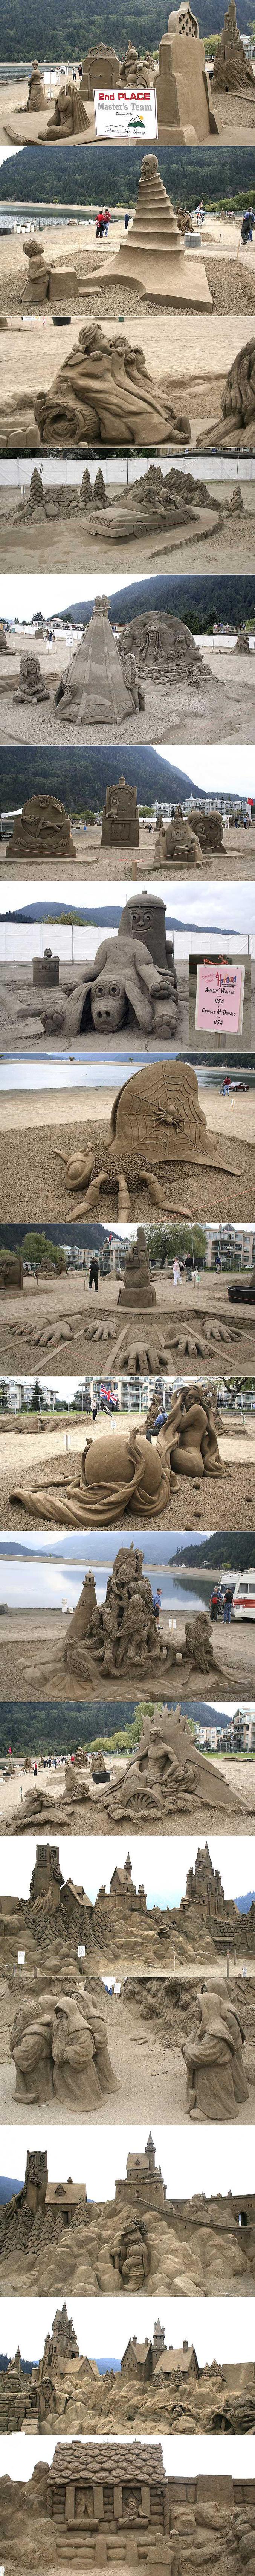 Une série de magnifiques sculptures en sable.